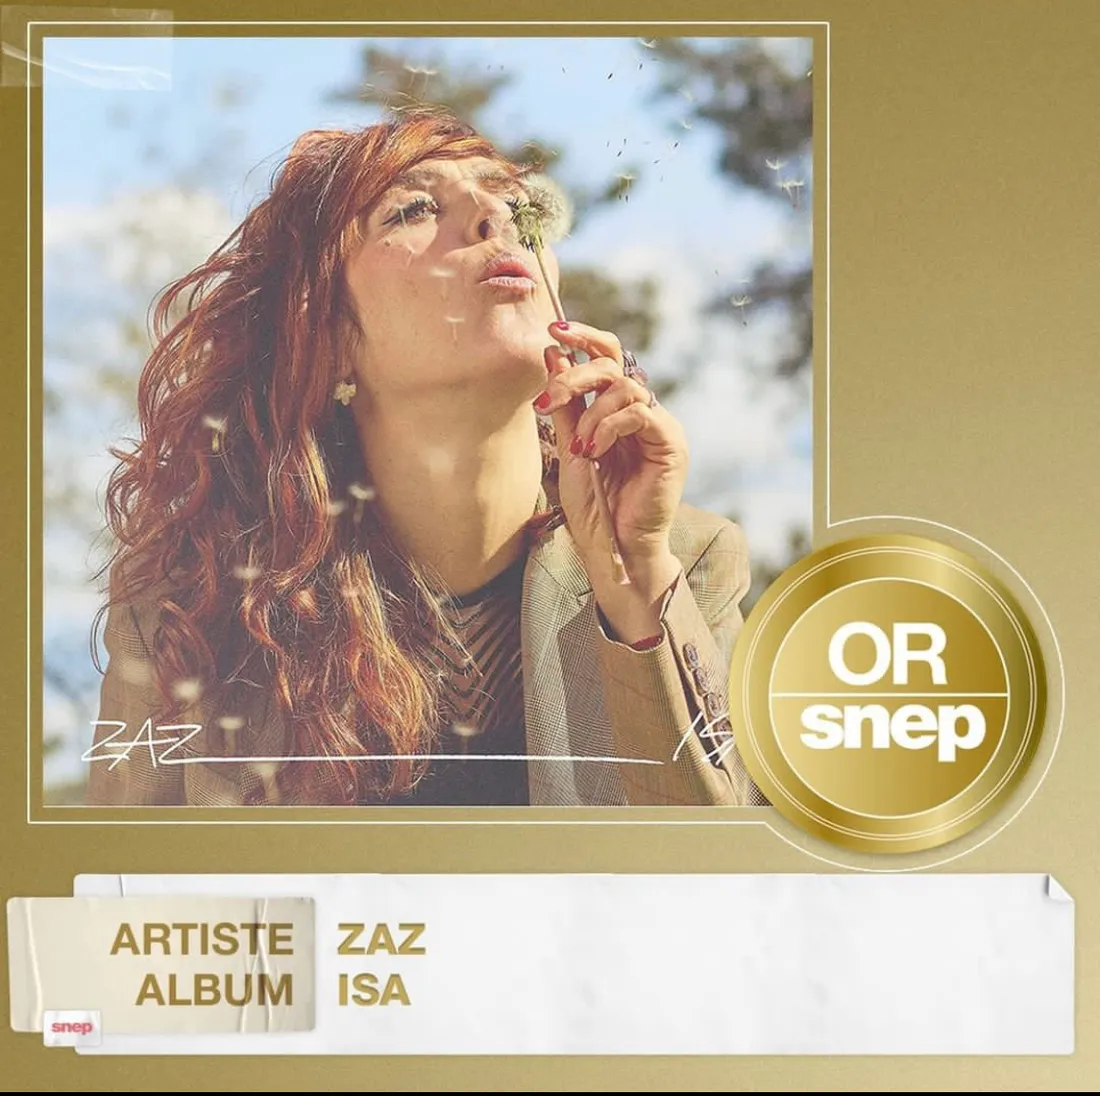 Zaz affiche son disque d'or obtenu pour son album "Isa"